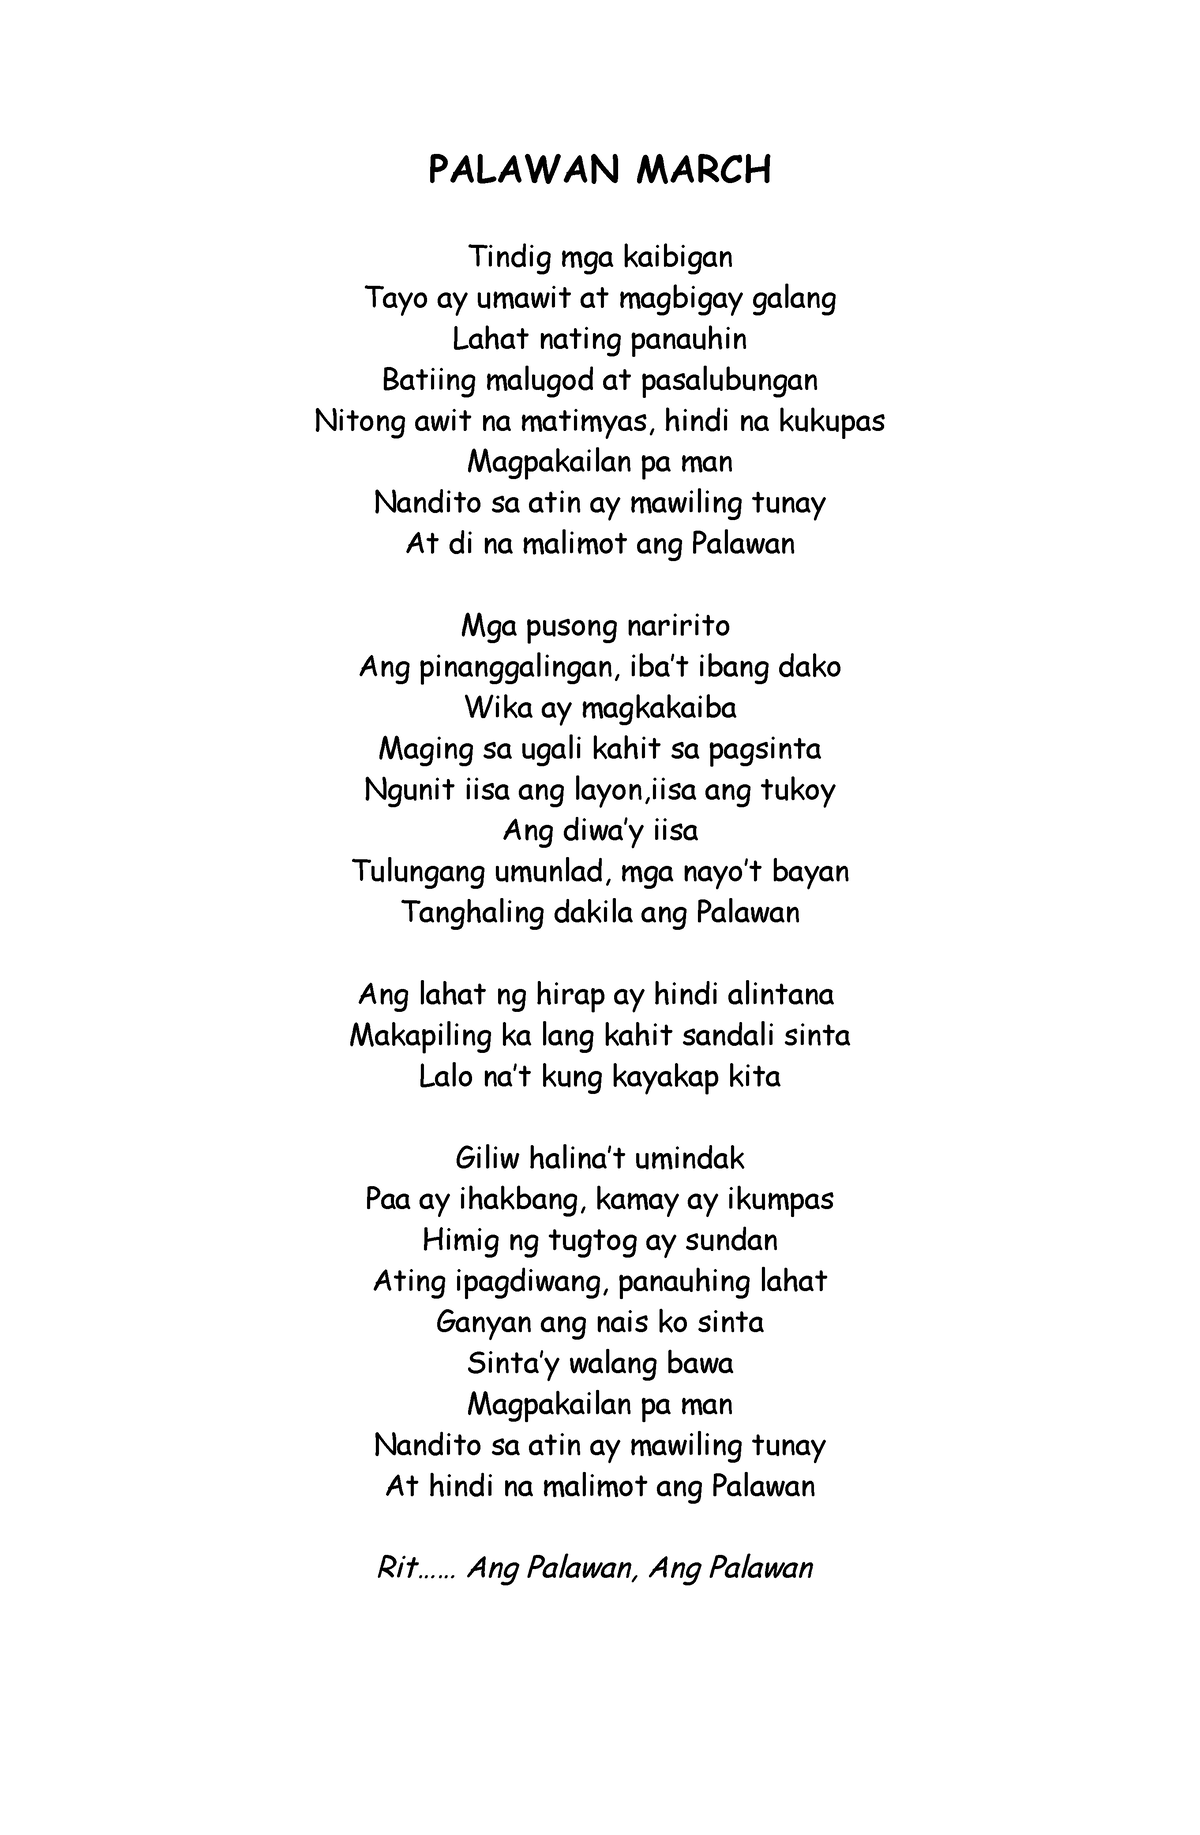 Palawan March - For guide and reference - PALAWAN MARCH Tindig mga ...